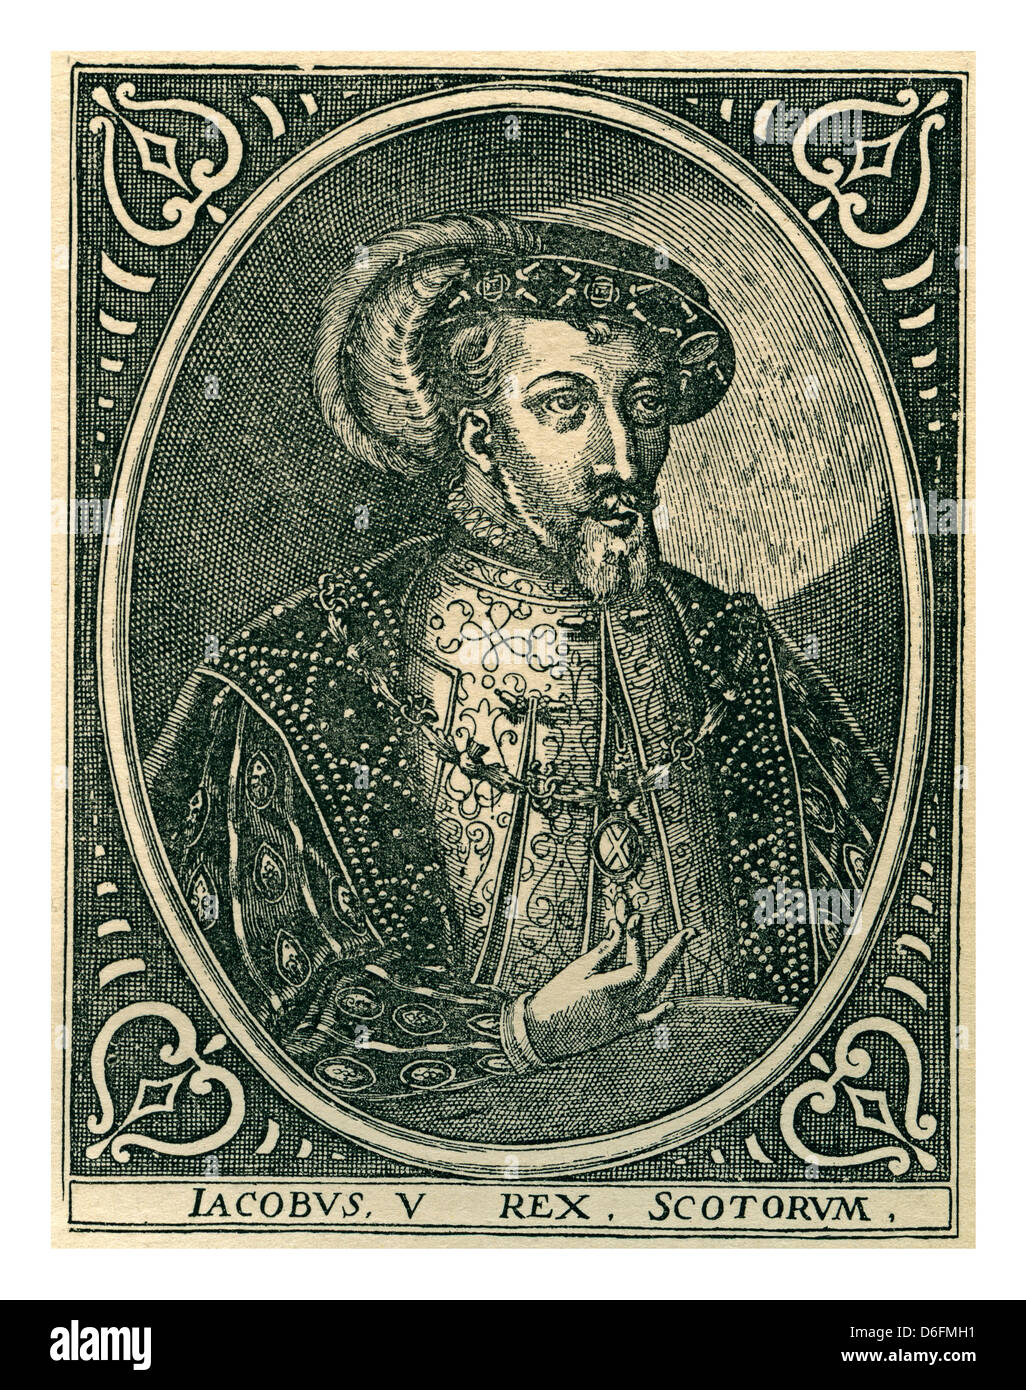 James V (10 Aprile 1512 - 14 dicembre 1542) era il re di Scozia a partire dal 9 Settembre 1513 fino alla sua morte nel1542 Foto Stock